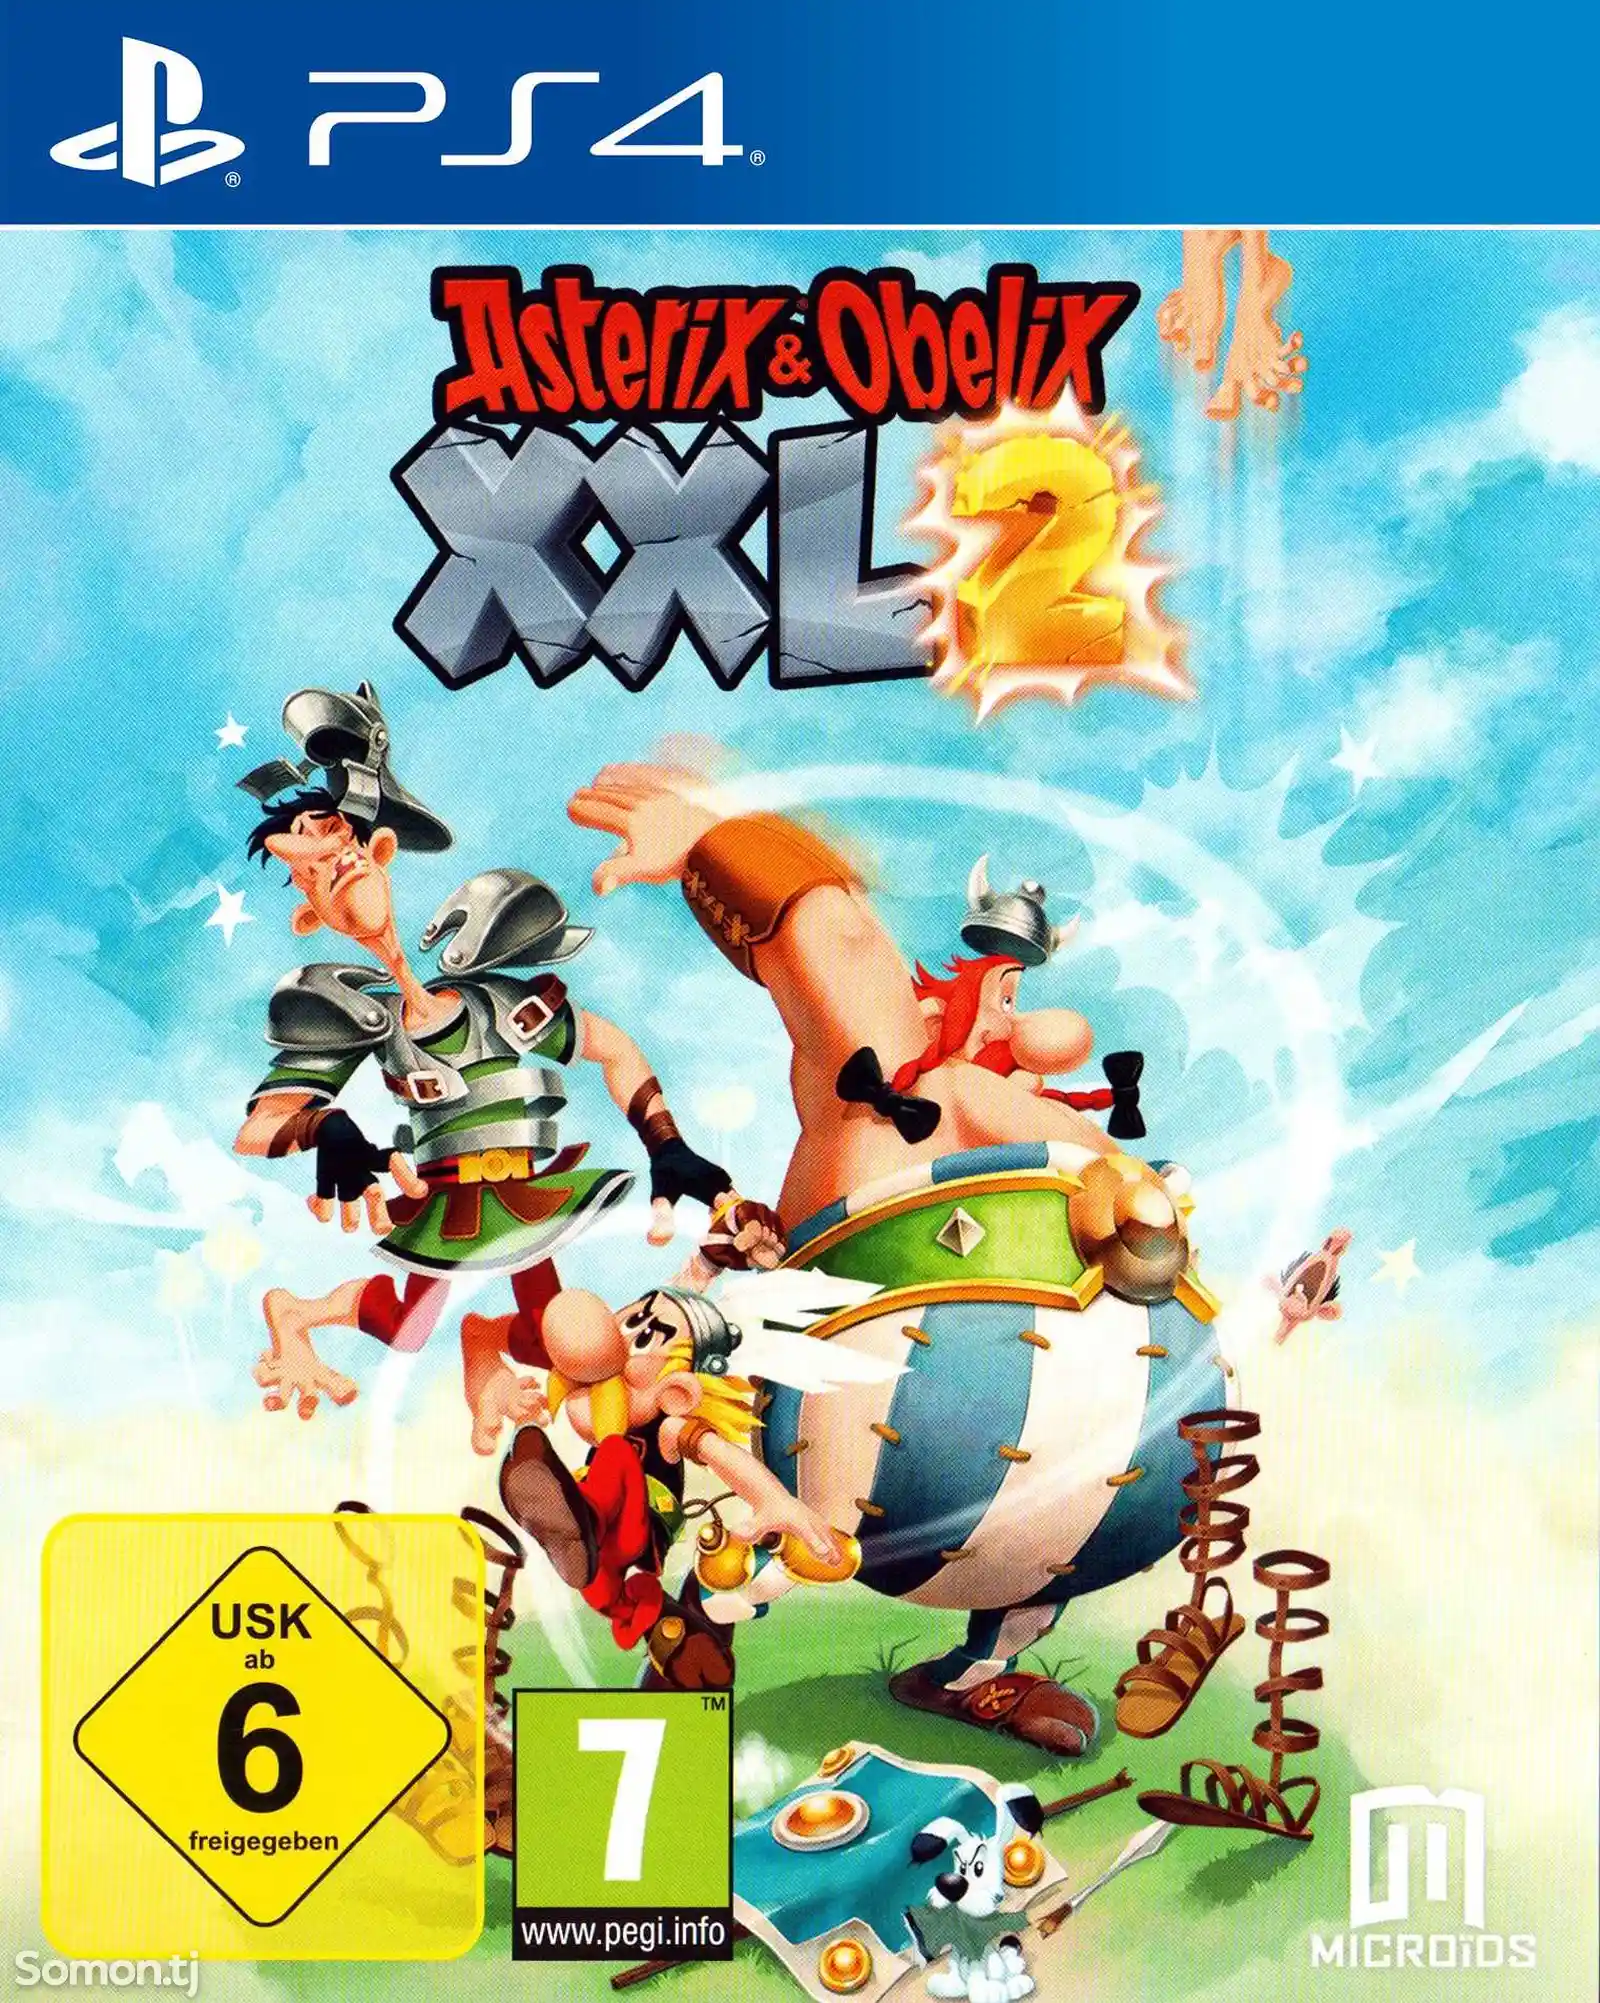 Игра Asterix and obelix xxl2 для PS-4 / 5.05 / 6.72 / 7.02 / 7.55 / 9.00 /-1